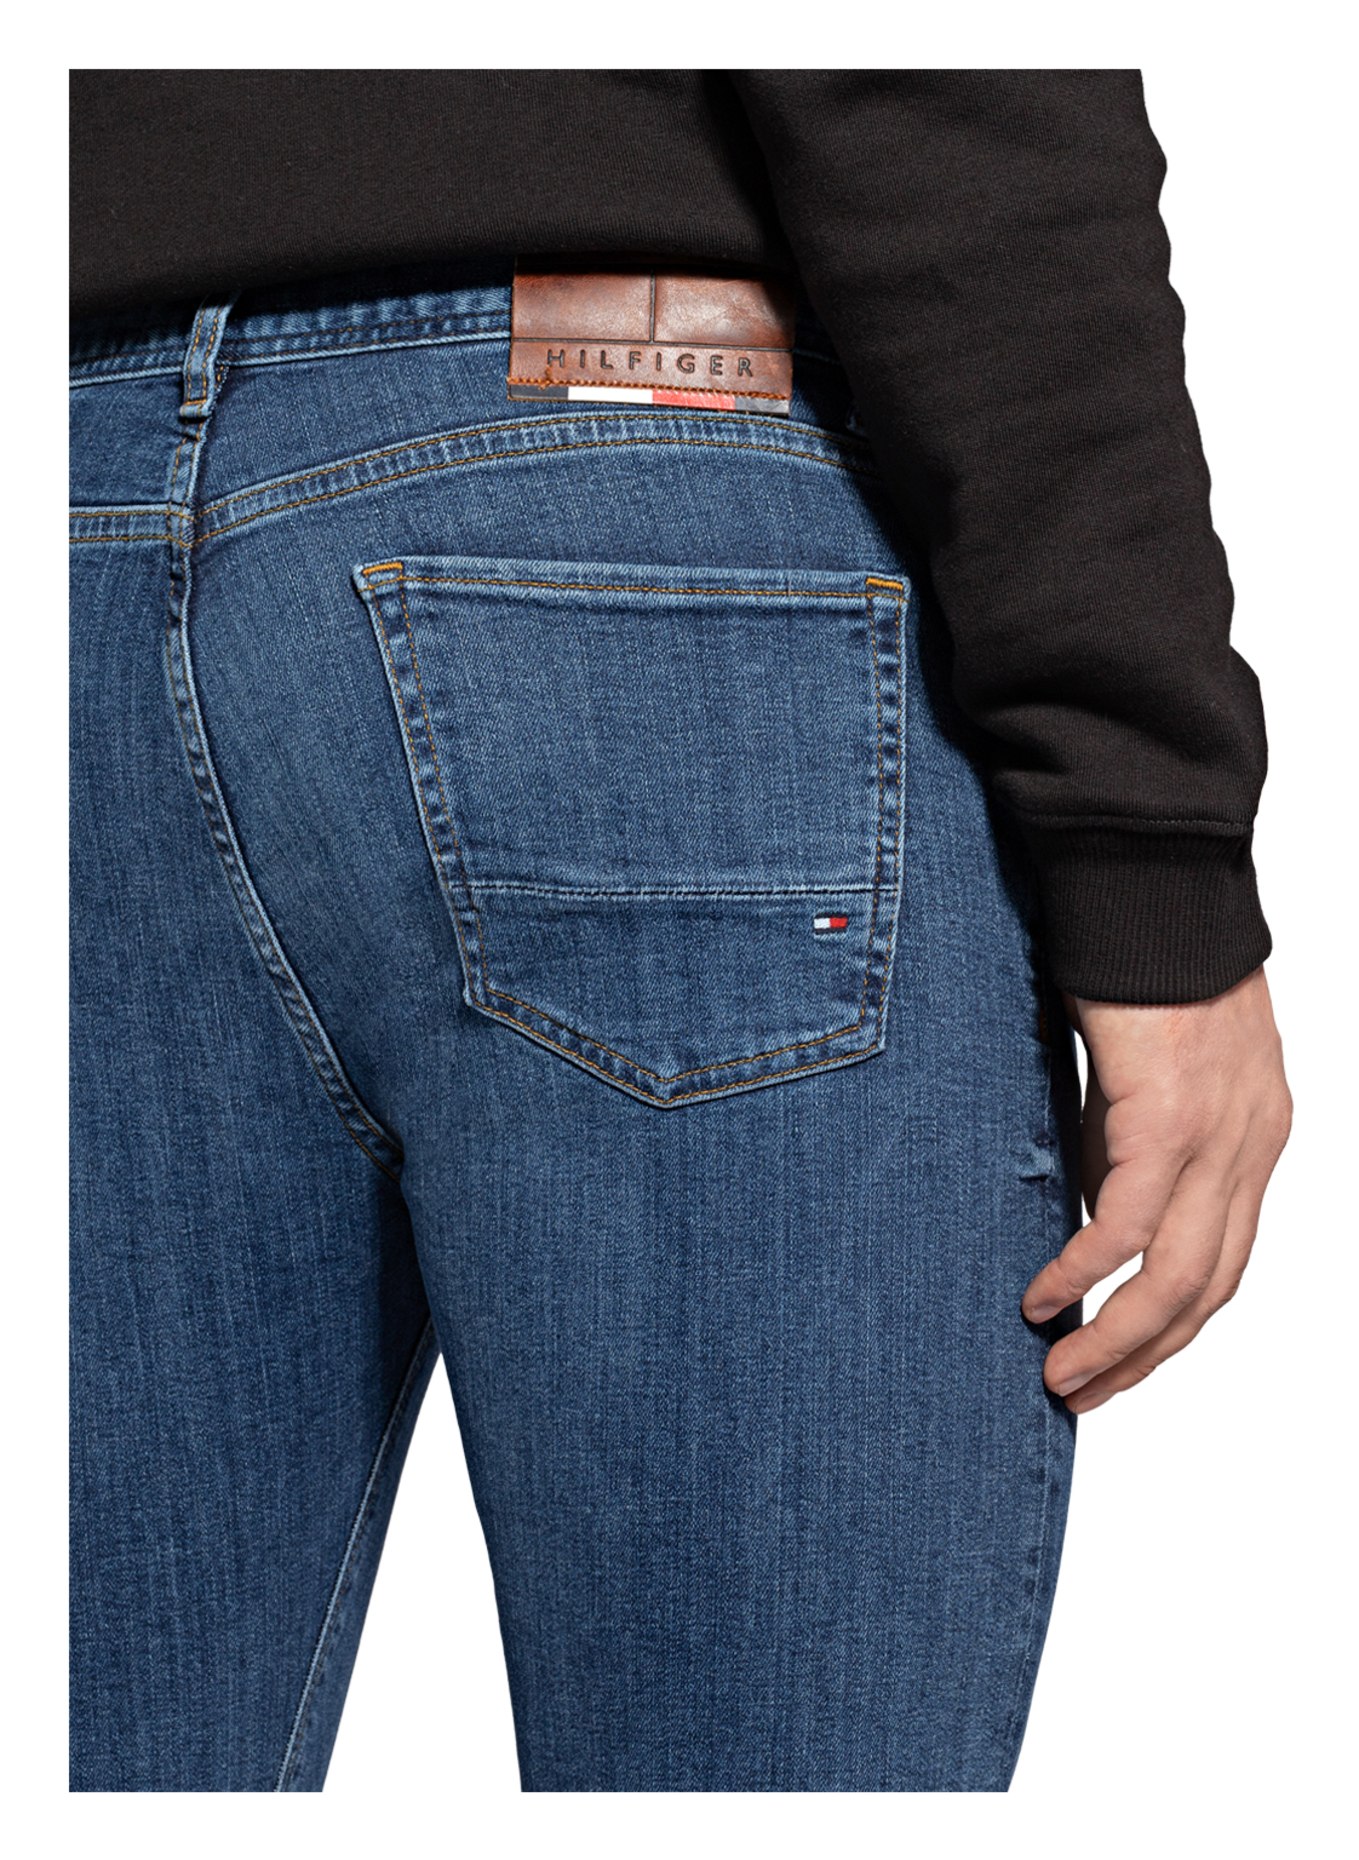 TOMMY HILFIGER Jeans BLEECKER slim fit, Color: 1C4 Oregon Indigo (Image 7)